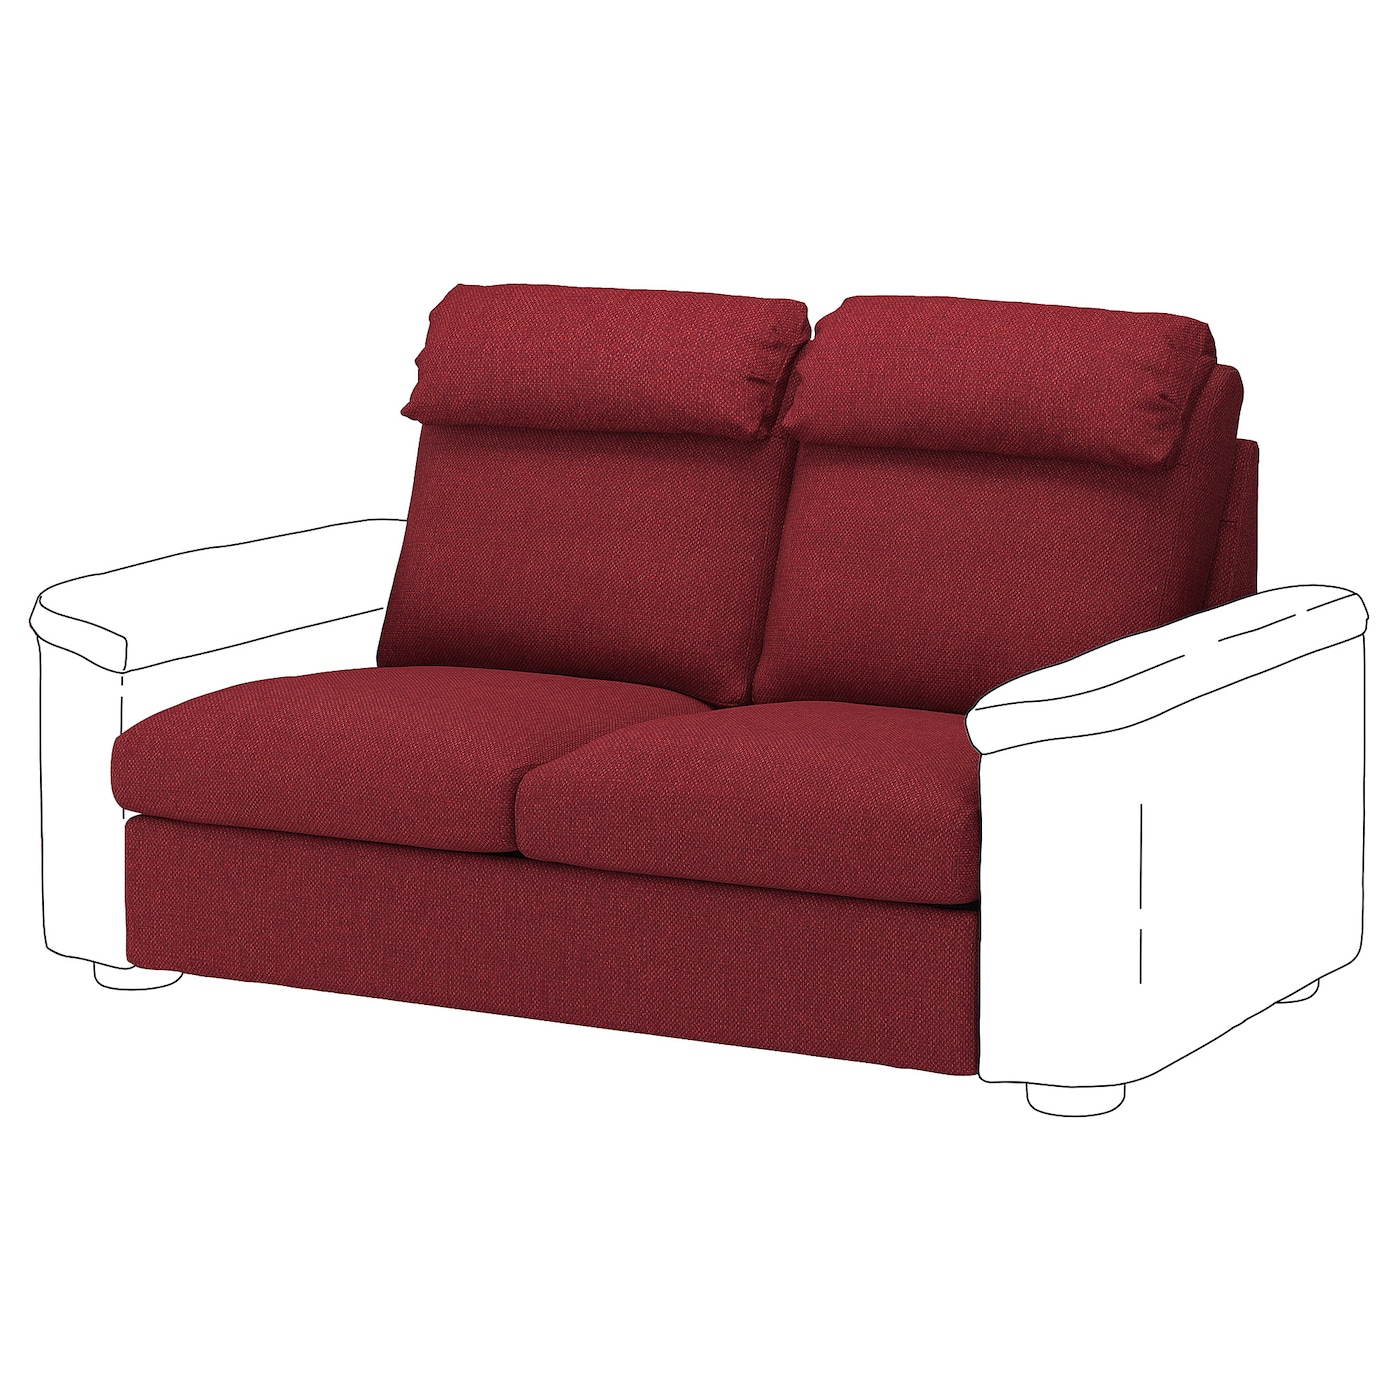 LIDHULT Bezug Sitzelement 2  - extra Bezüge - Möbel Ideen für dein Zuhause von Home Trends. Möbel Trends von Social Media Influencer für dein Skandi Zuhause.